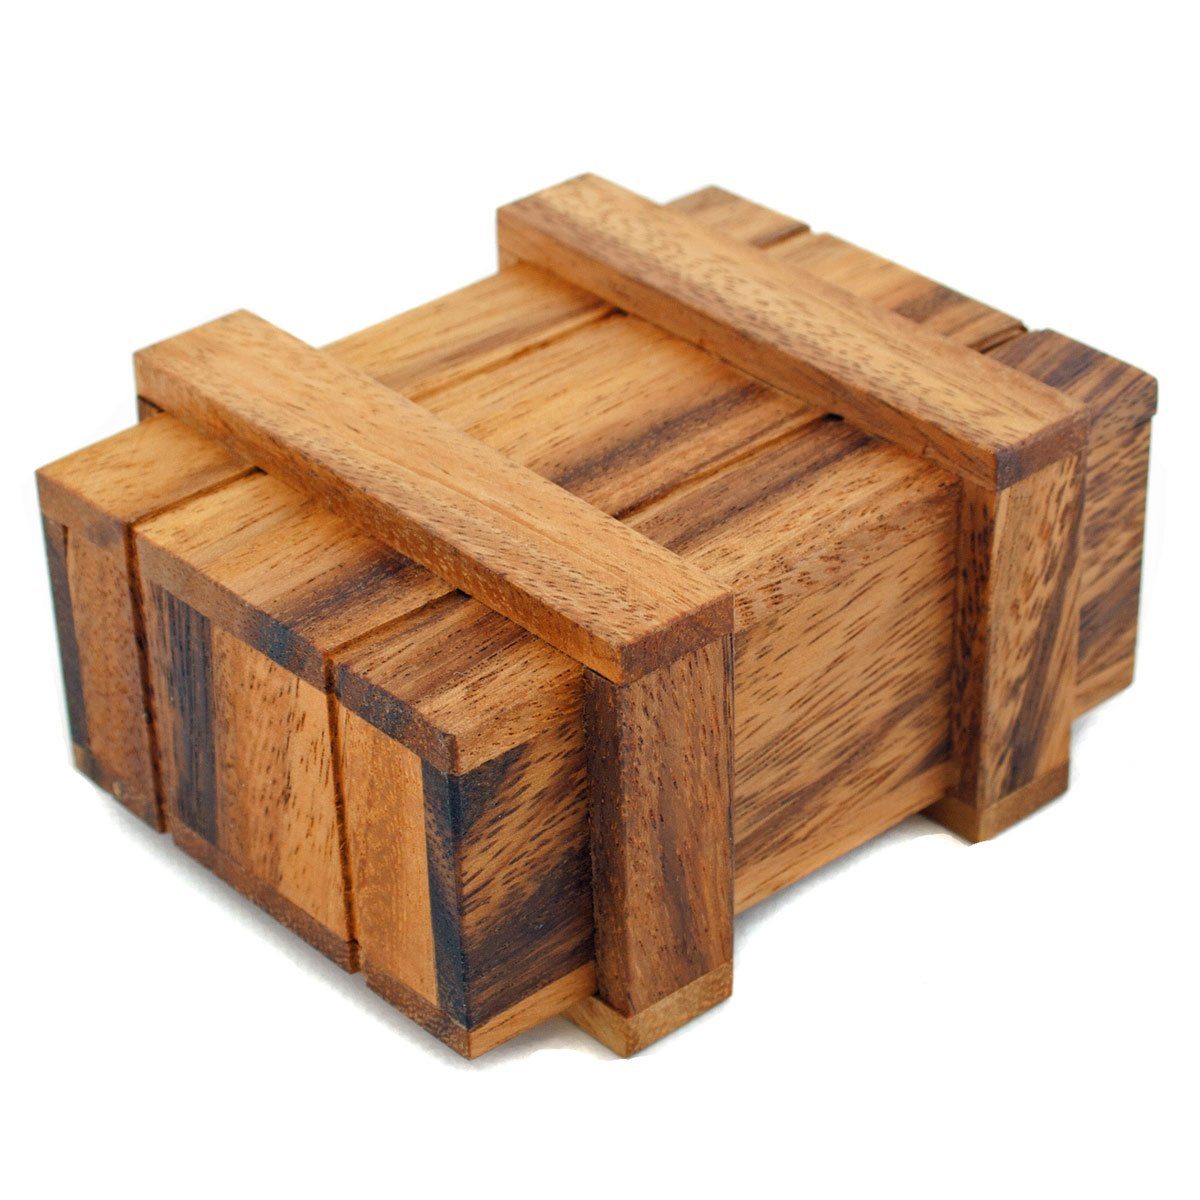 my420gadgets - Holzbox mit Geheimfach inkl. Gadgets